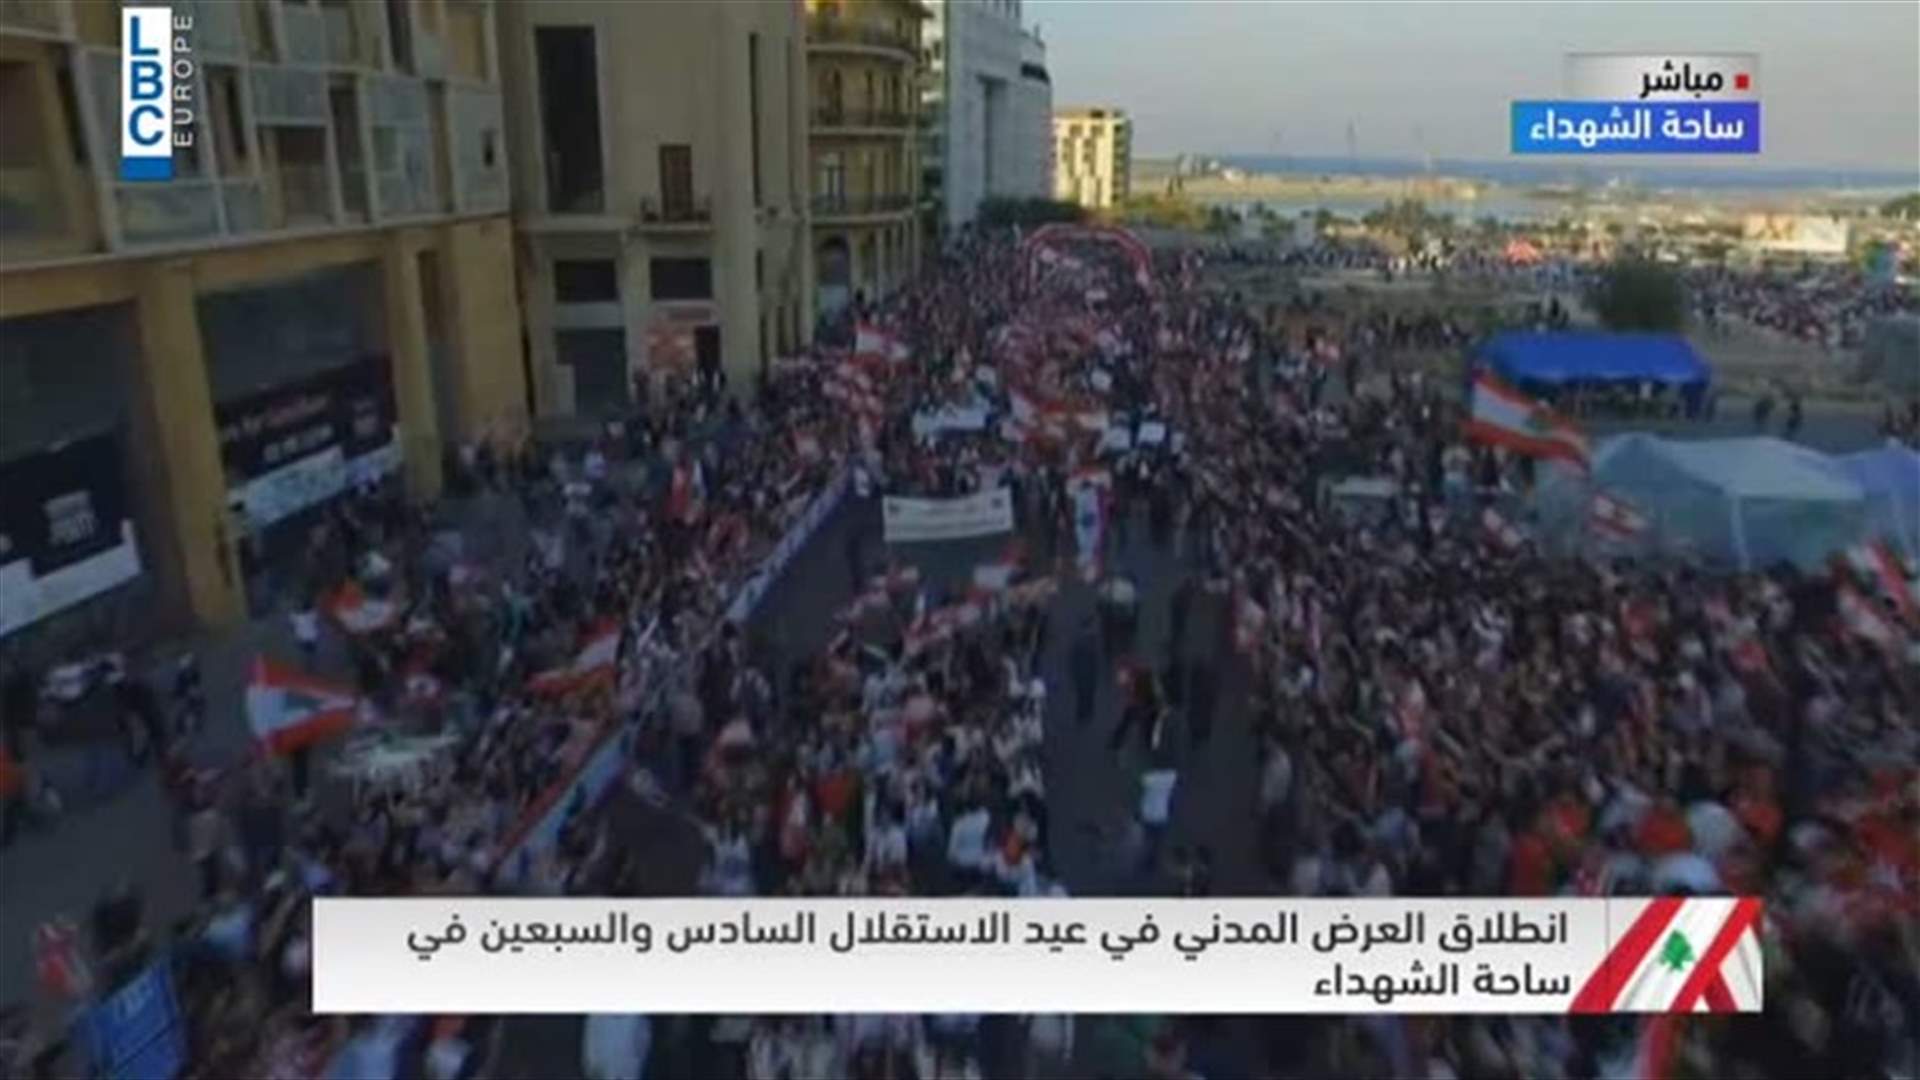 فيديو يظهر المشهد من الجو في خلال العرض المدني في ساحة الشهداء